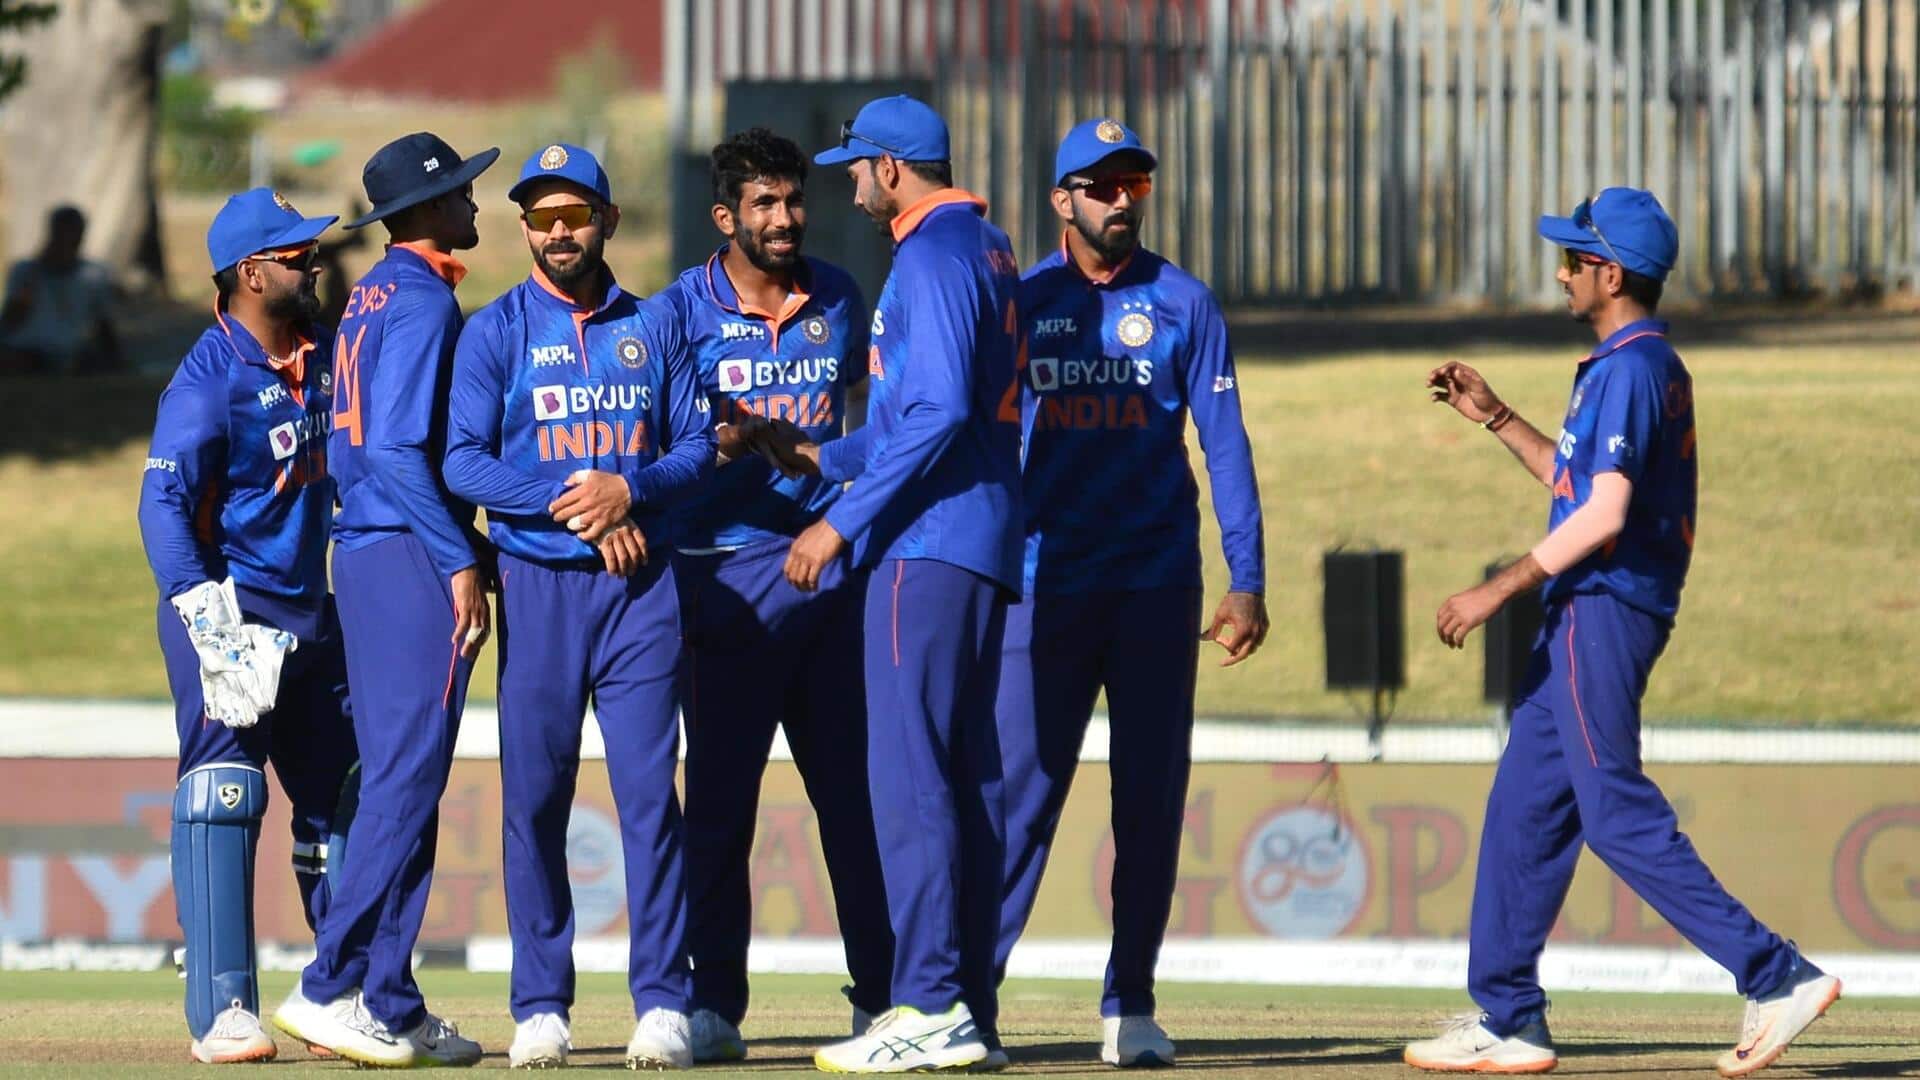 वनडे विश्व कप में बांग्लादेश के खिलाफ कैसा रहा है भारतीय टीम का प्रदर्शन? जानिए आंकड़े